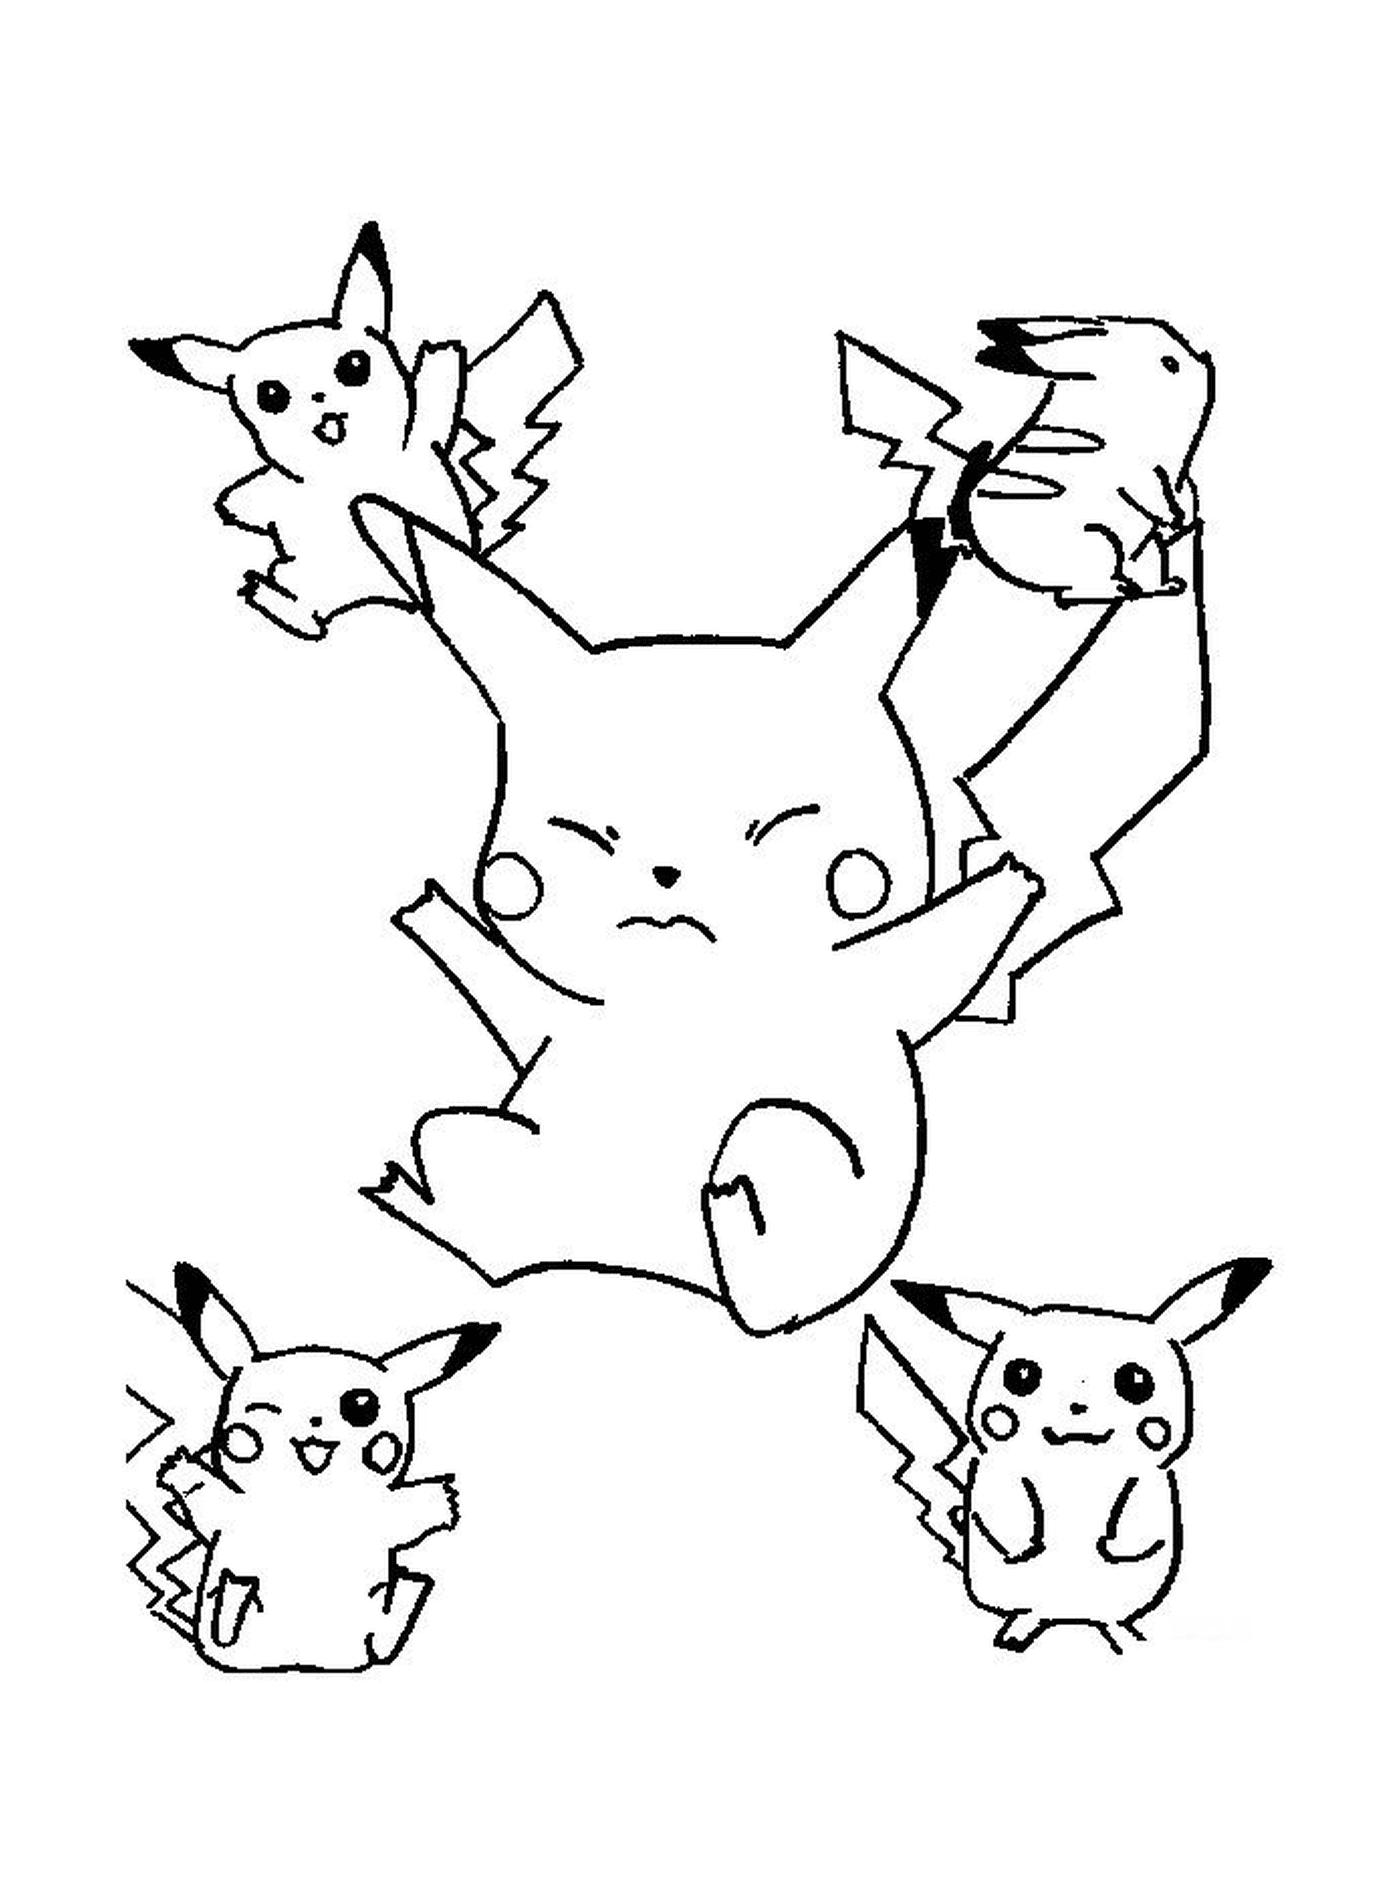  Un grupo de Pikachu saltando en el aire 